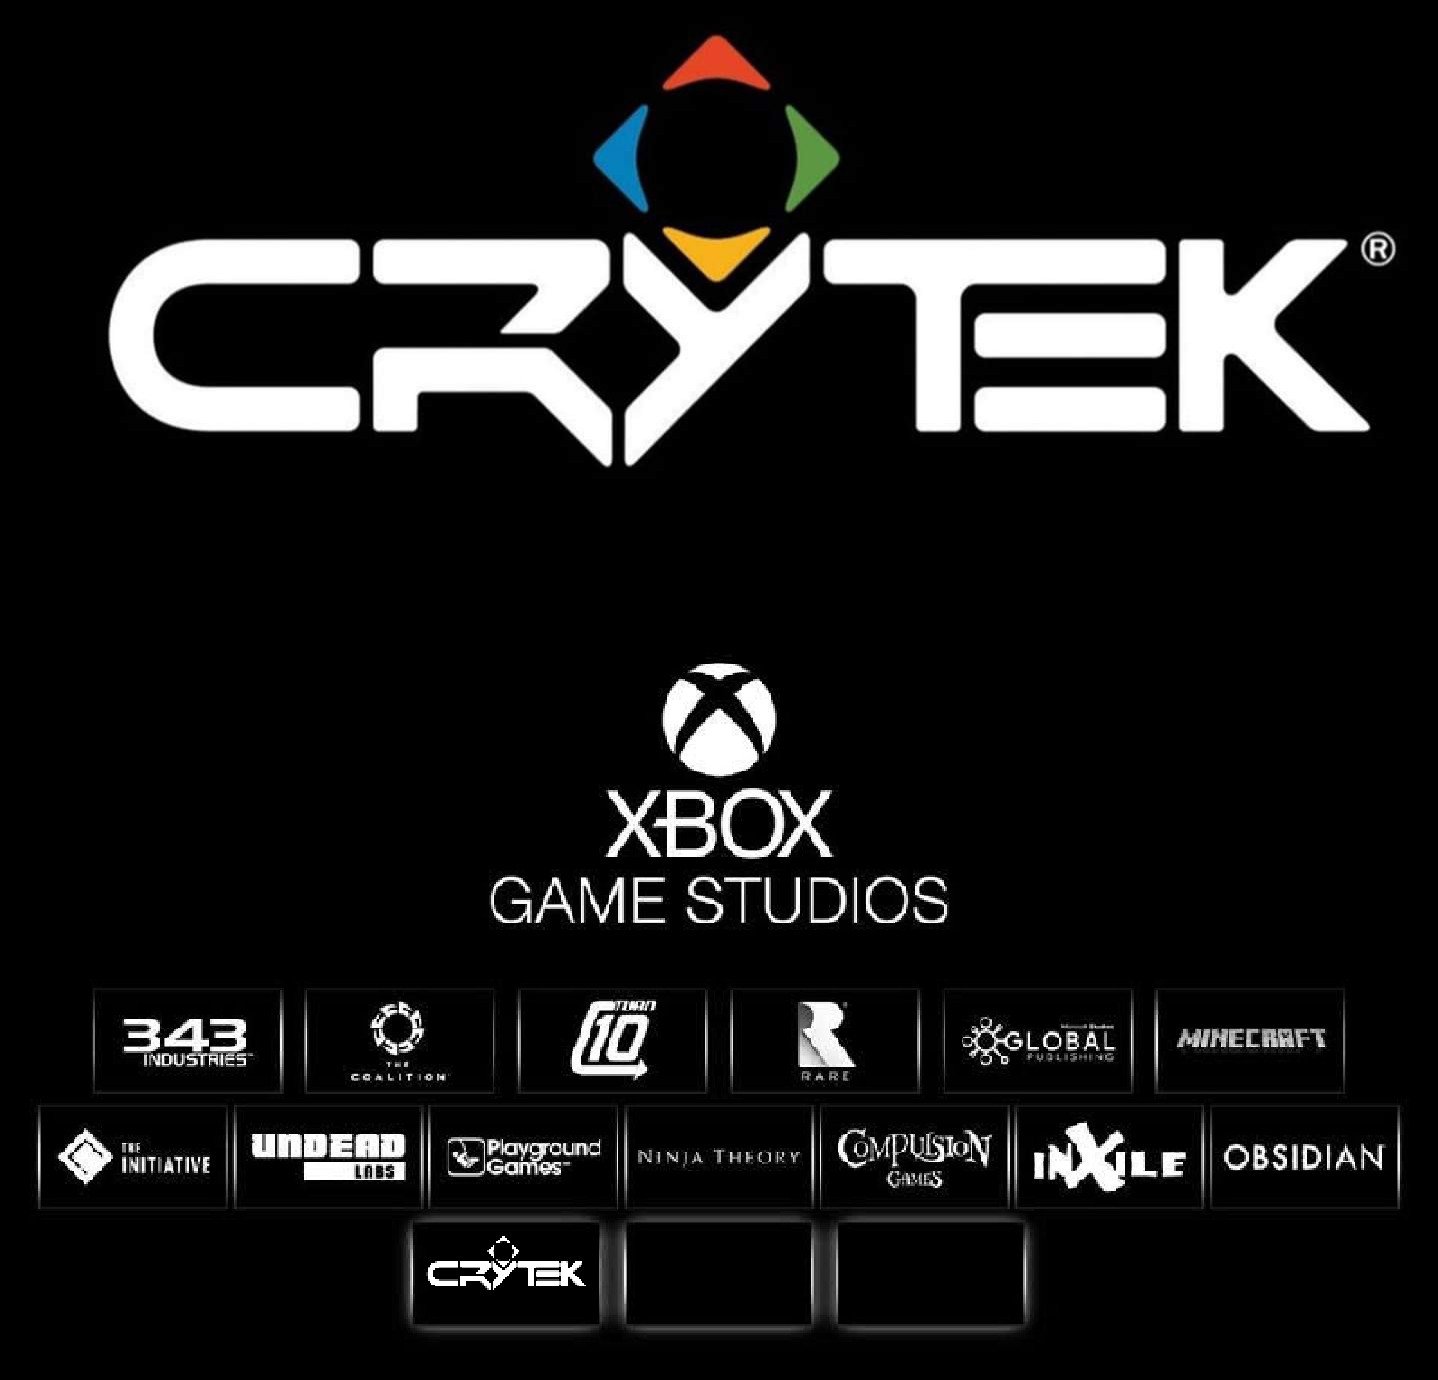 鈔能力來了！微軟或將收購《末日之戰》德國開發商Crytek